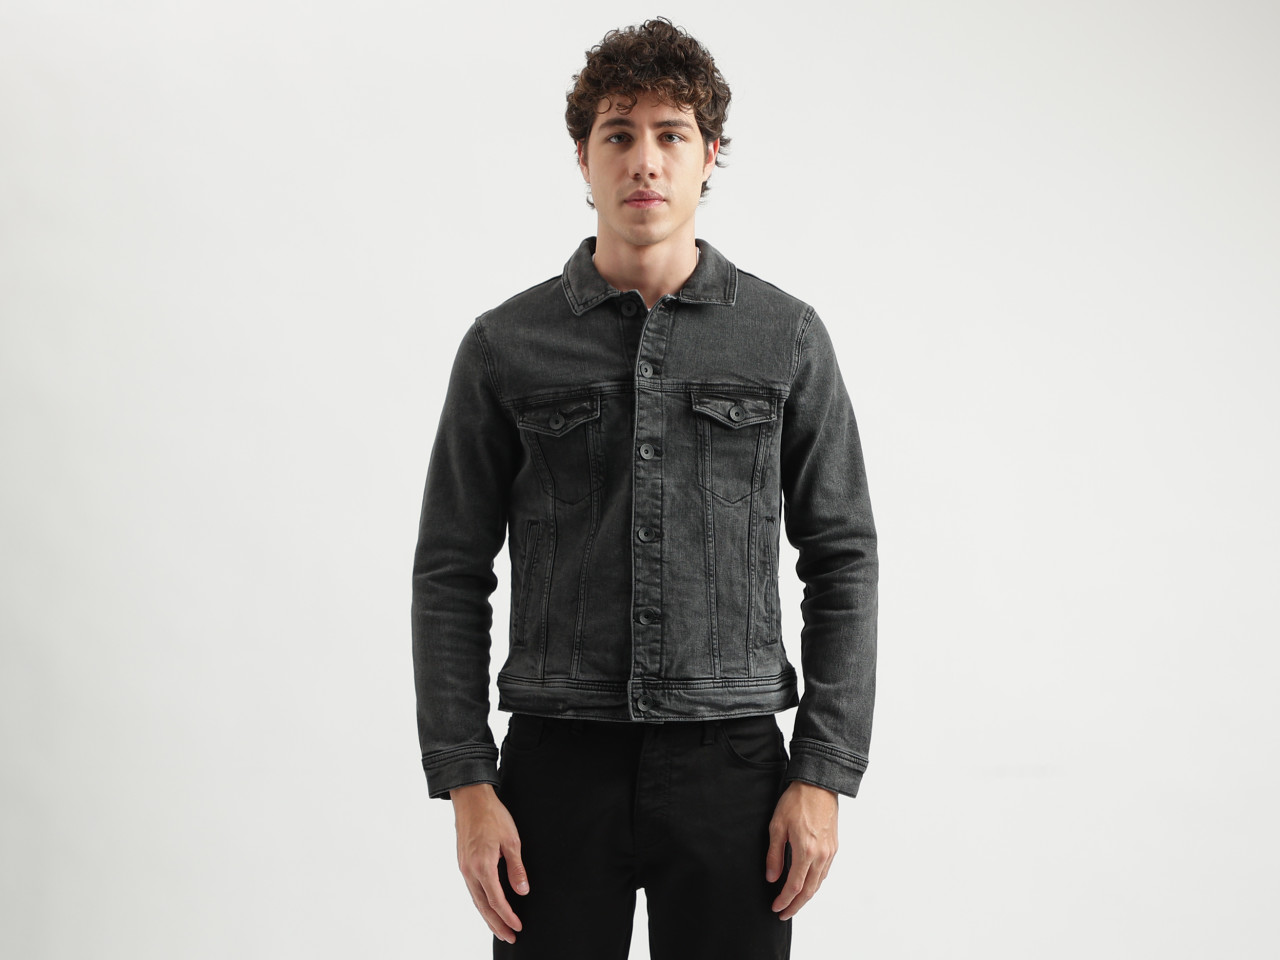 Denim Jacket - Buy branded Denim Jacket online denim, cotton,Denim Jacket  for Men at Limeroad.